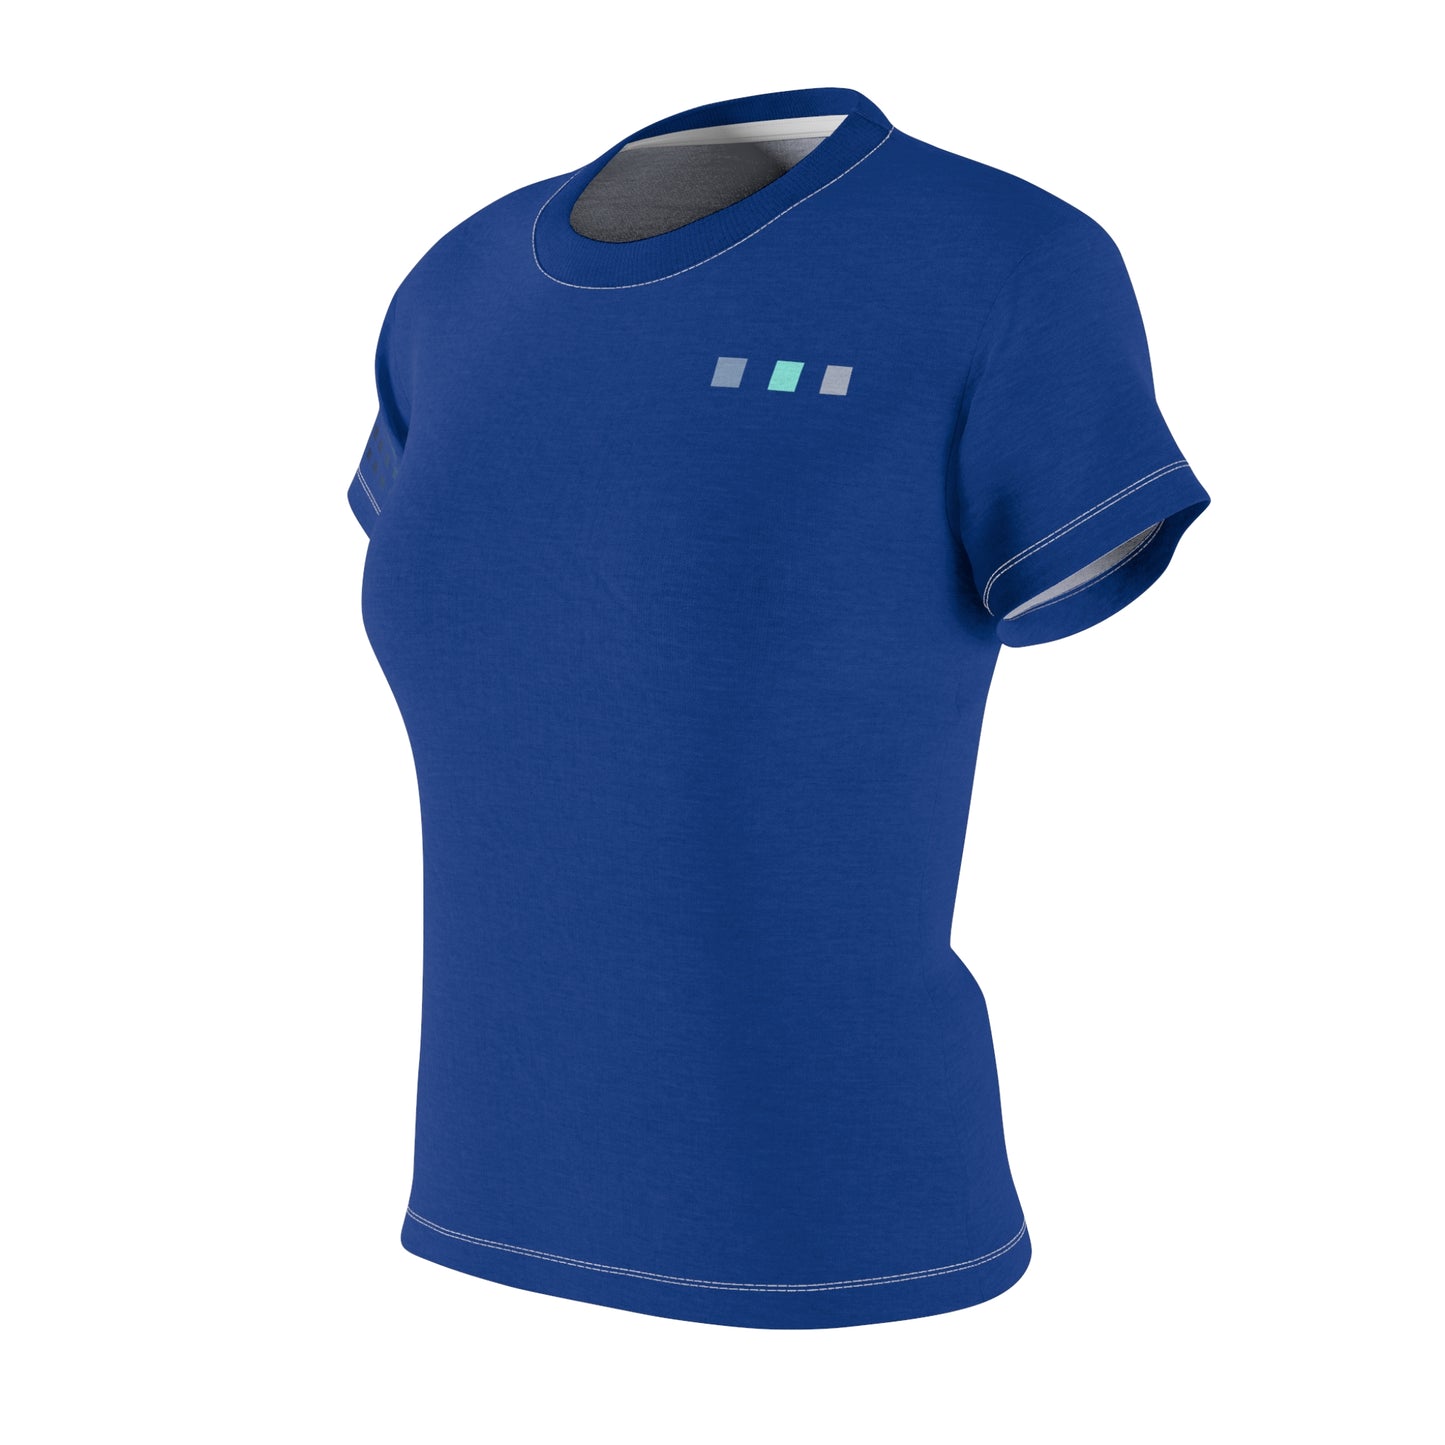 Paladin Punks #58 Blue T-shirt Short Sleeve Sublimation Dye